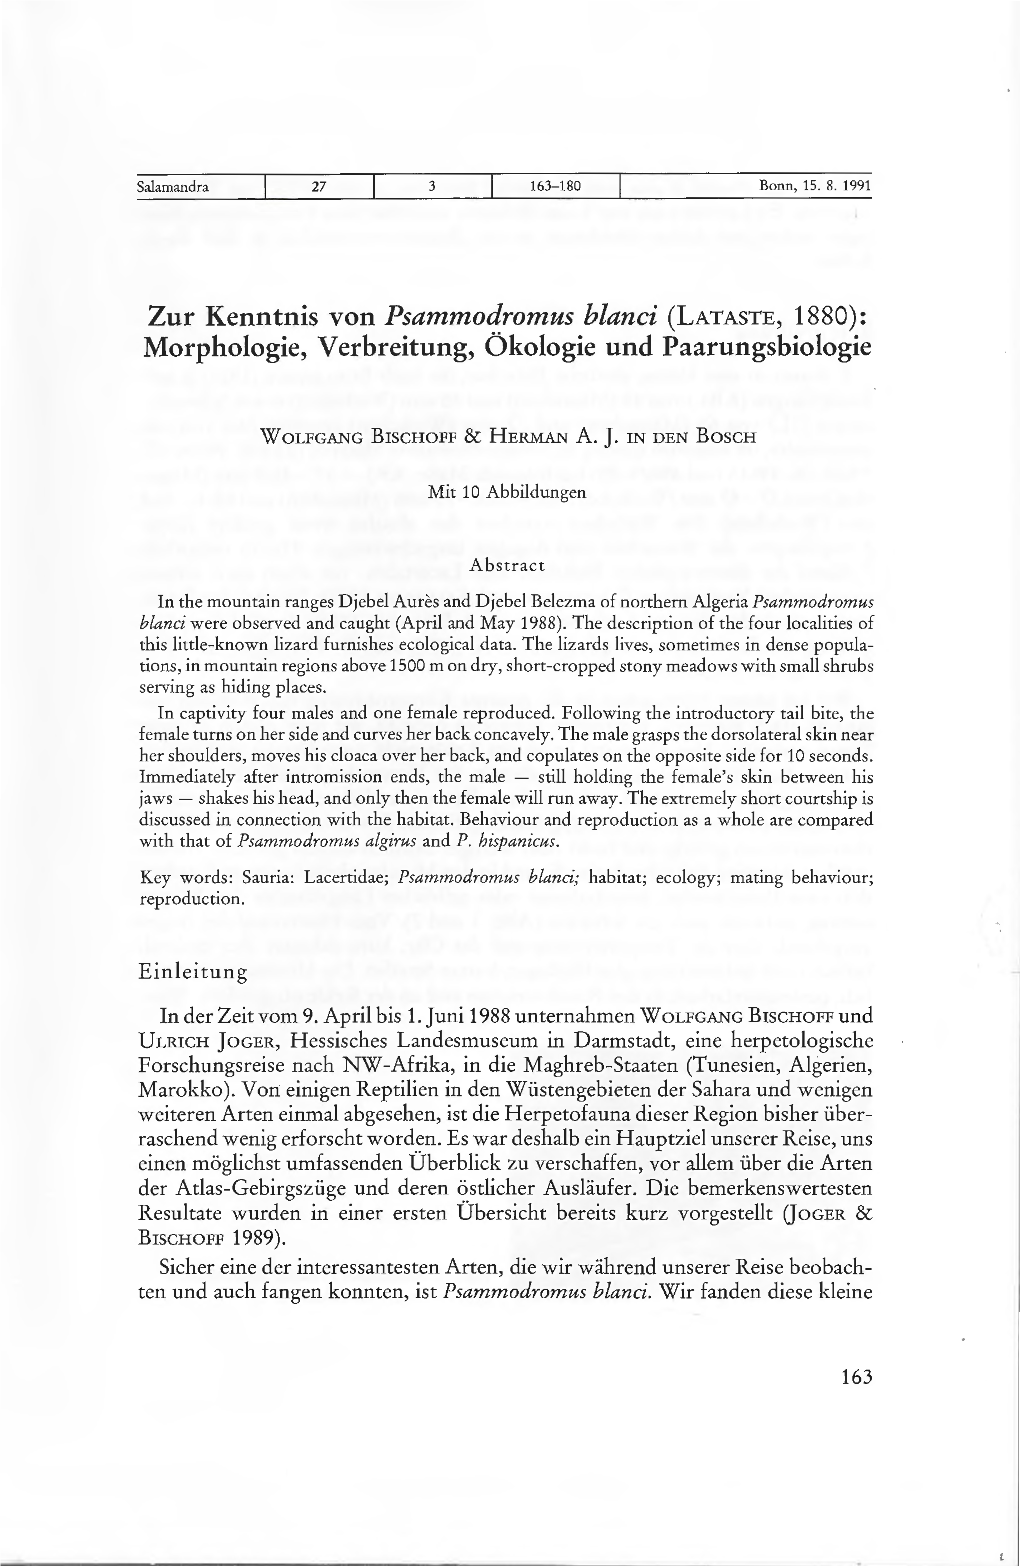 Zur Kenntnis Von Psammodromus Blanci (LATASTE, 1880): Morphologie, Verbreitung, Ökologie Und Paarungsbiologie